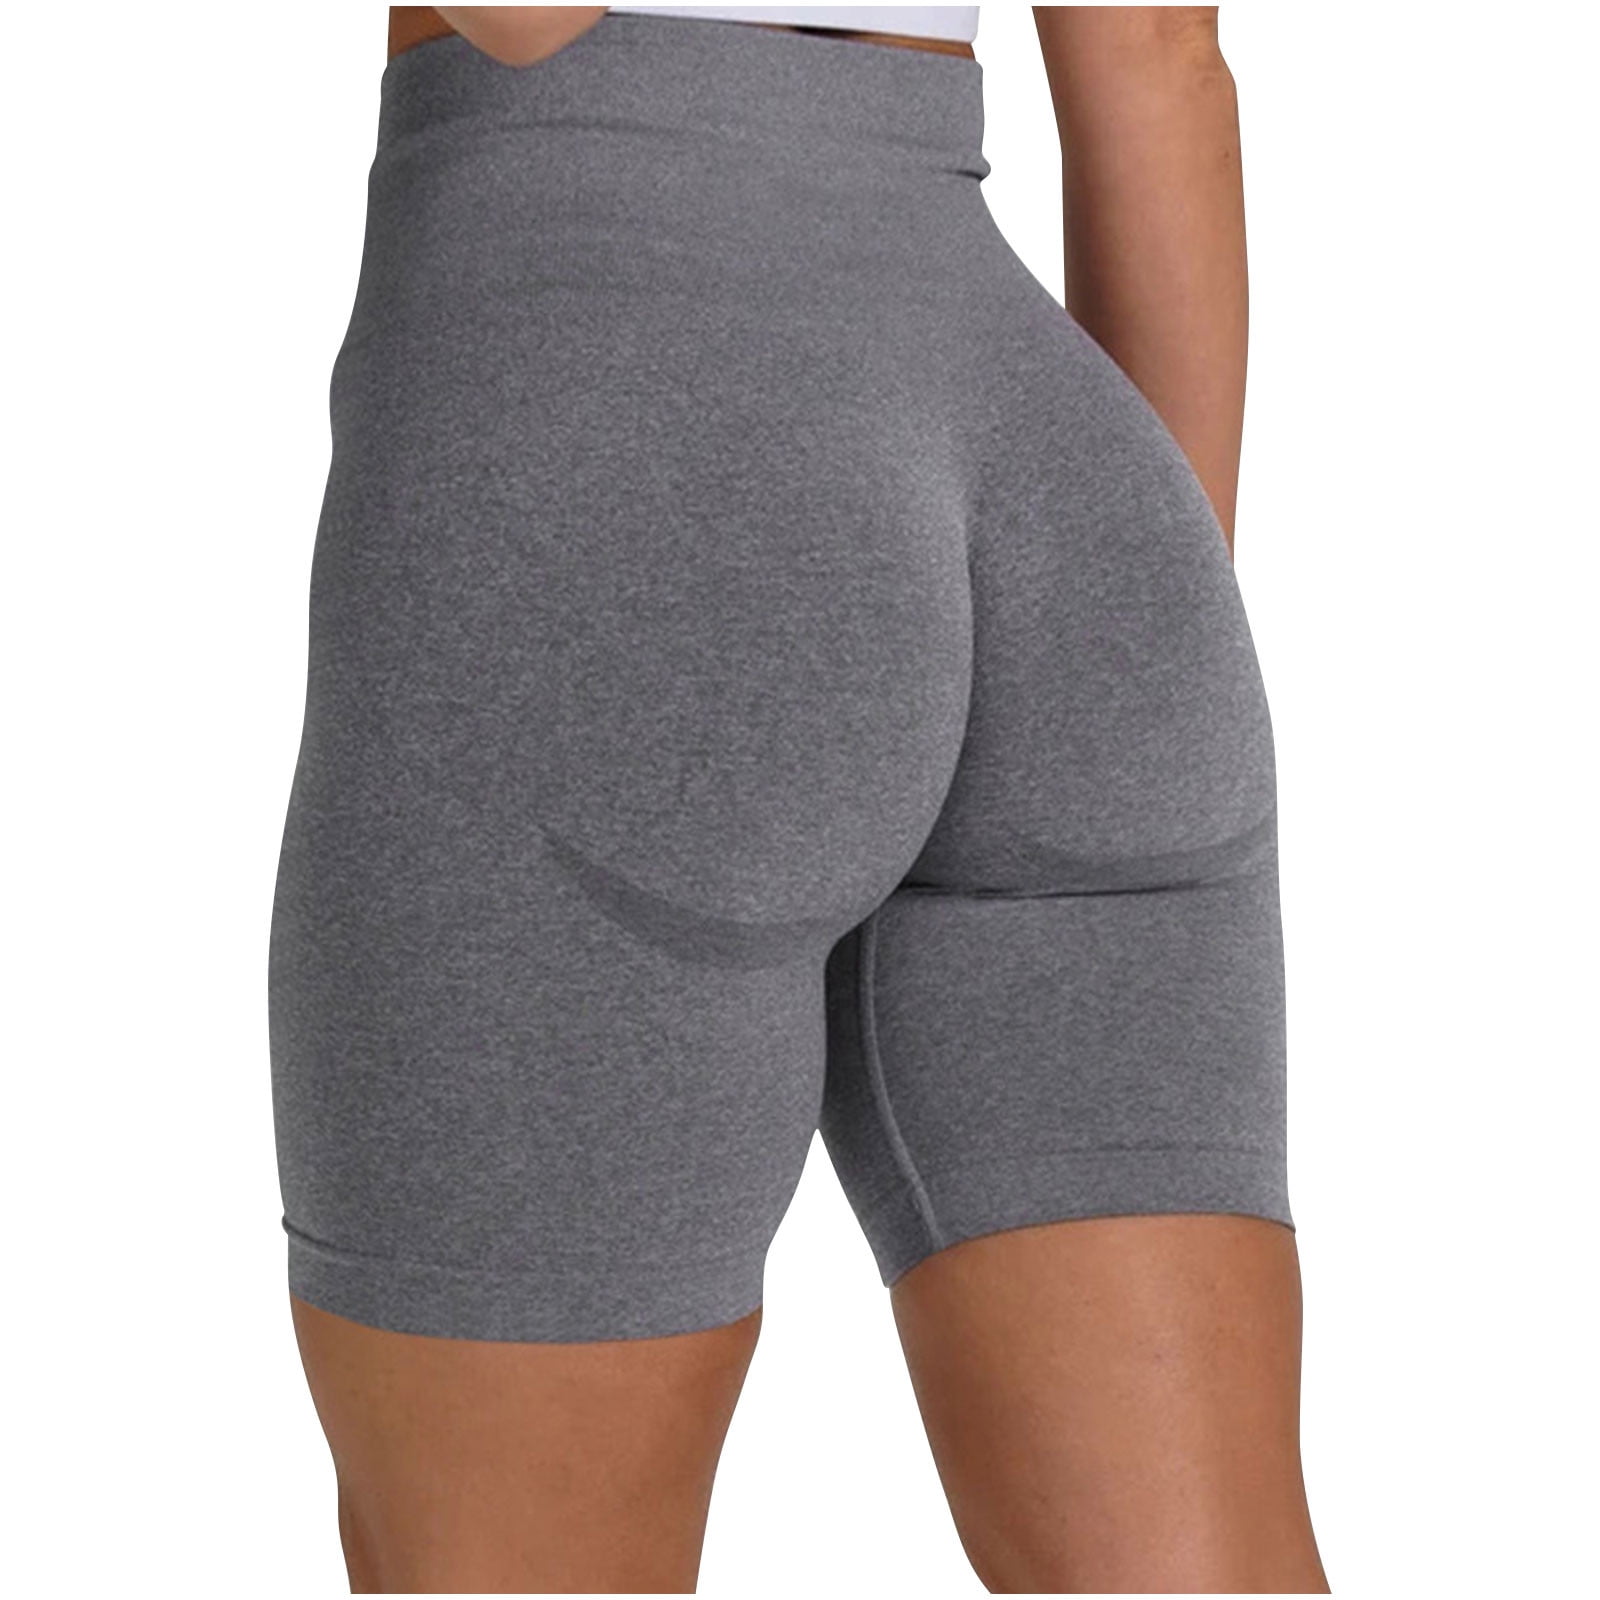 RQYYD Reduced Women's Seamless Scrunch Butt Lift Biker Shorts High Waist  Booty Contour Workout Yoga Gym Shorts(Dark Gray,L)